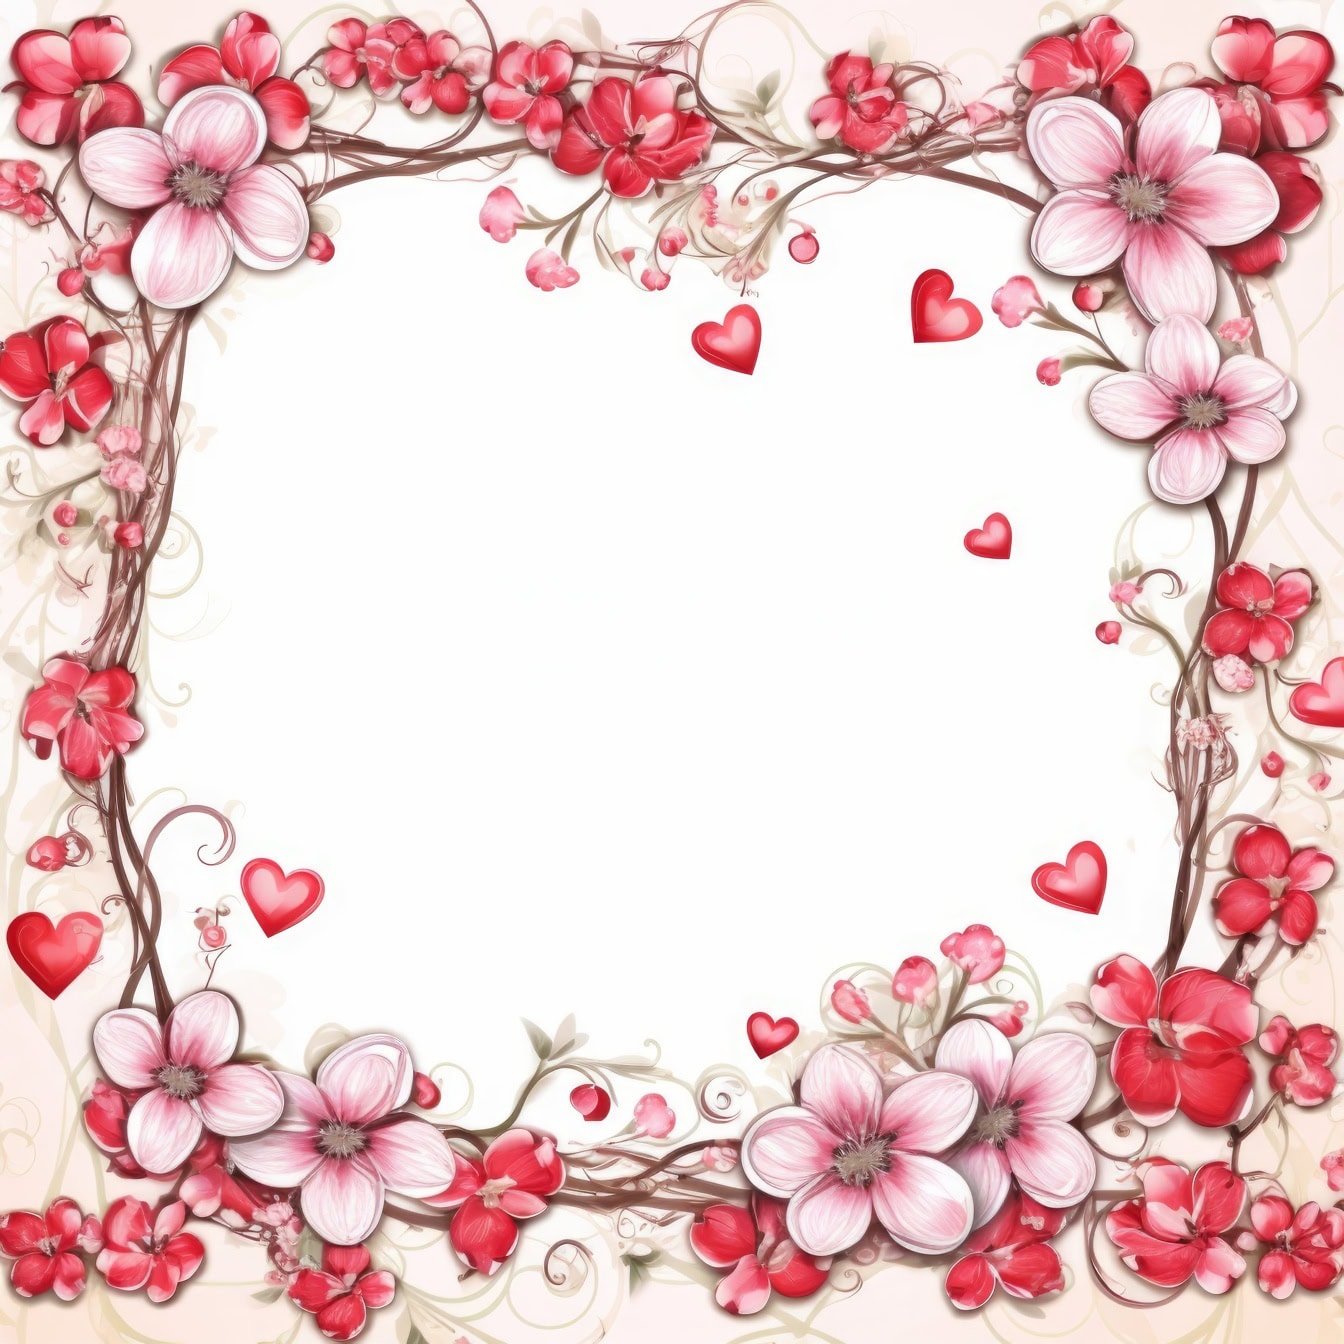 Pembemsi tonlarda çiçek ve kalp çerçeveli romantik tebrik kartı şablonu